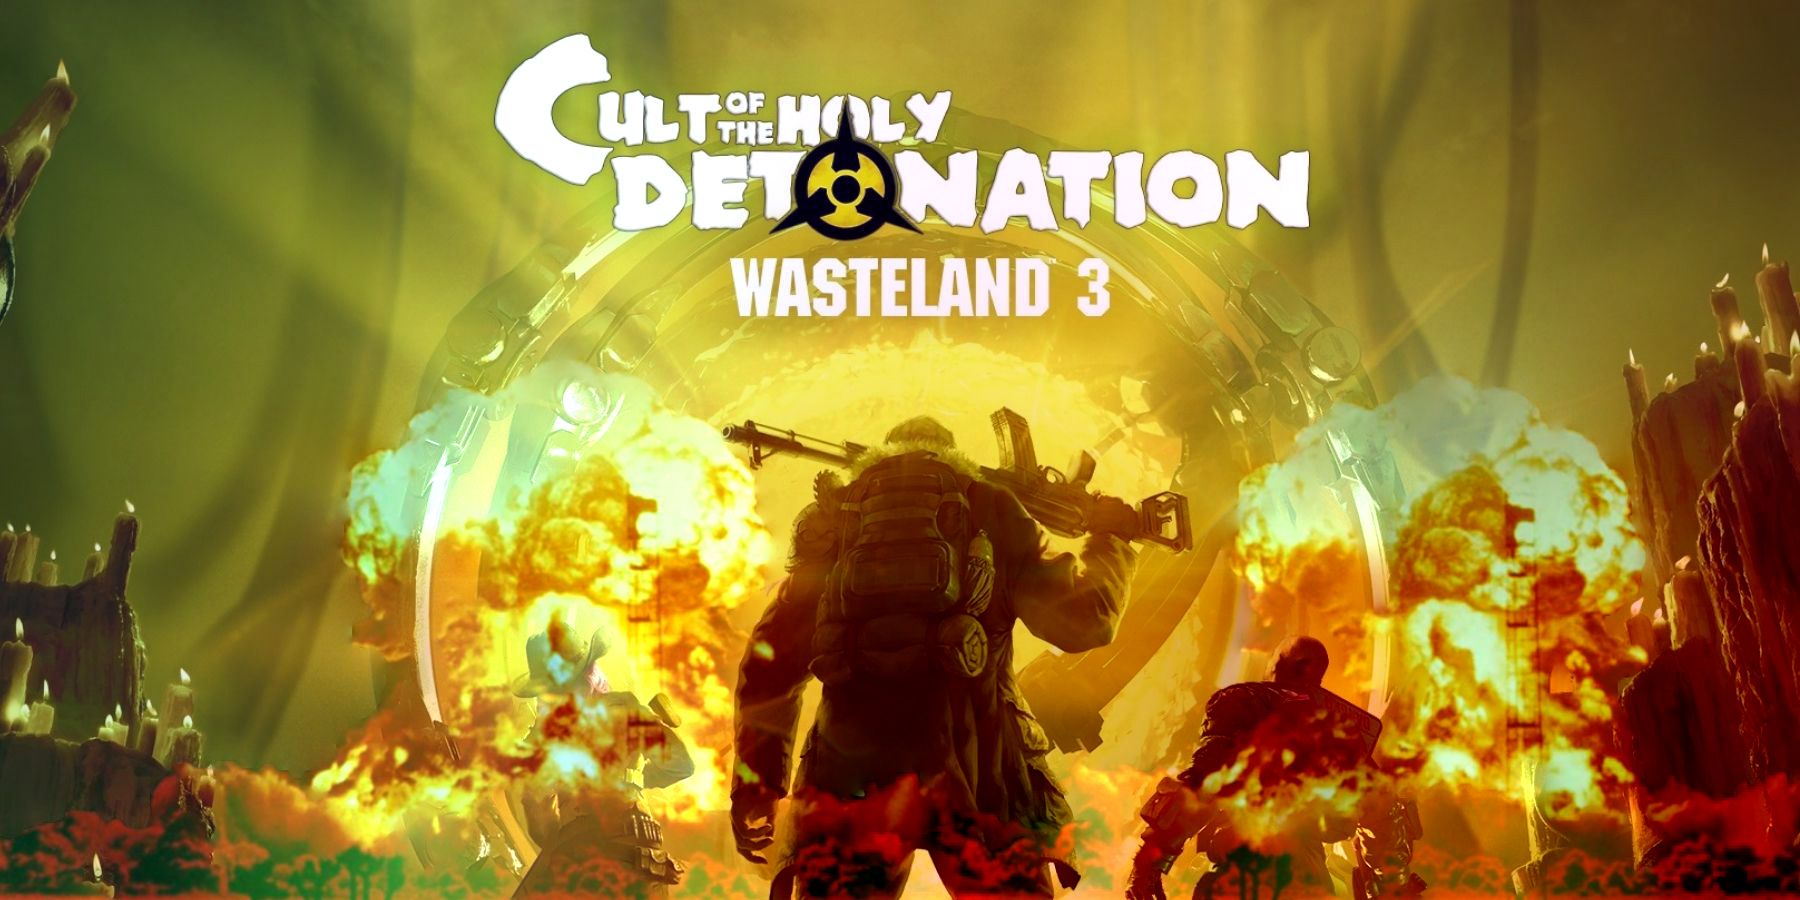 wasteland 3 cult of the holy detonation